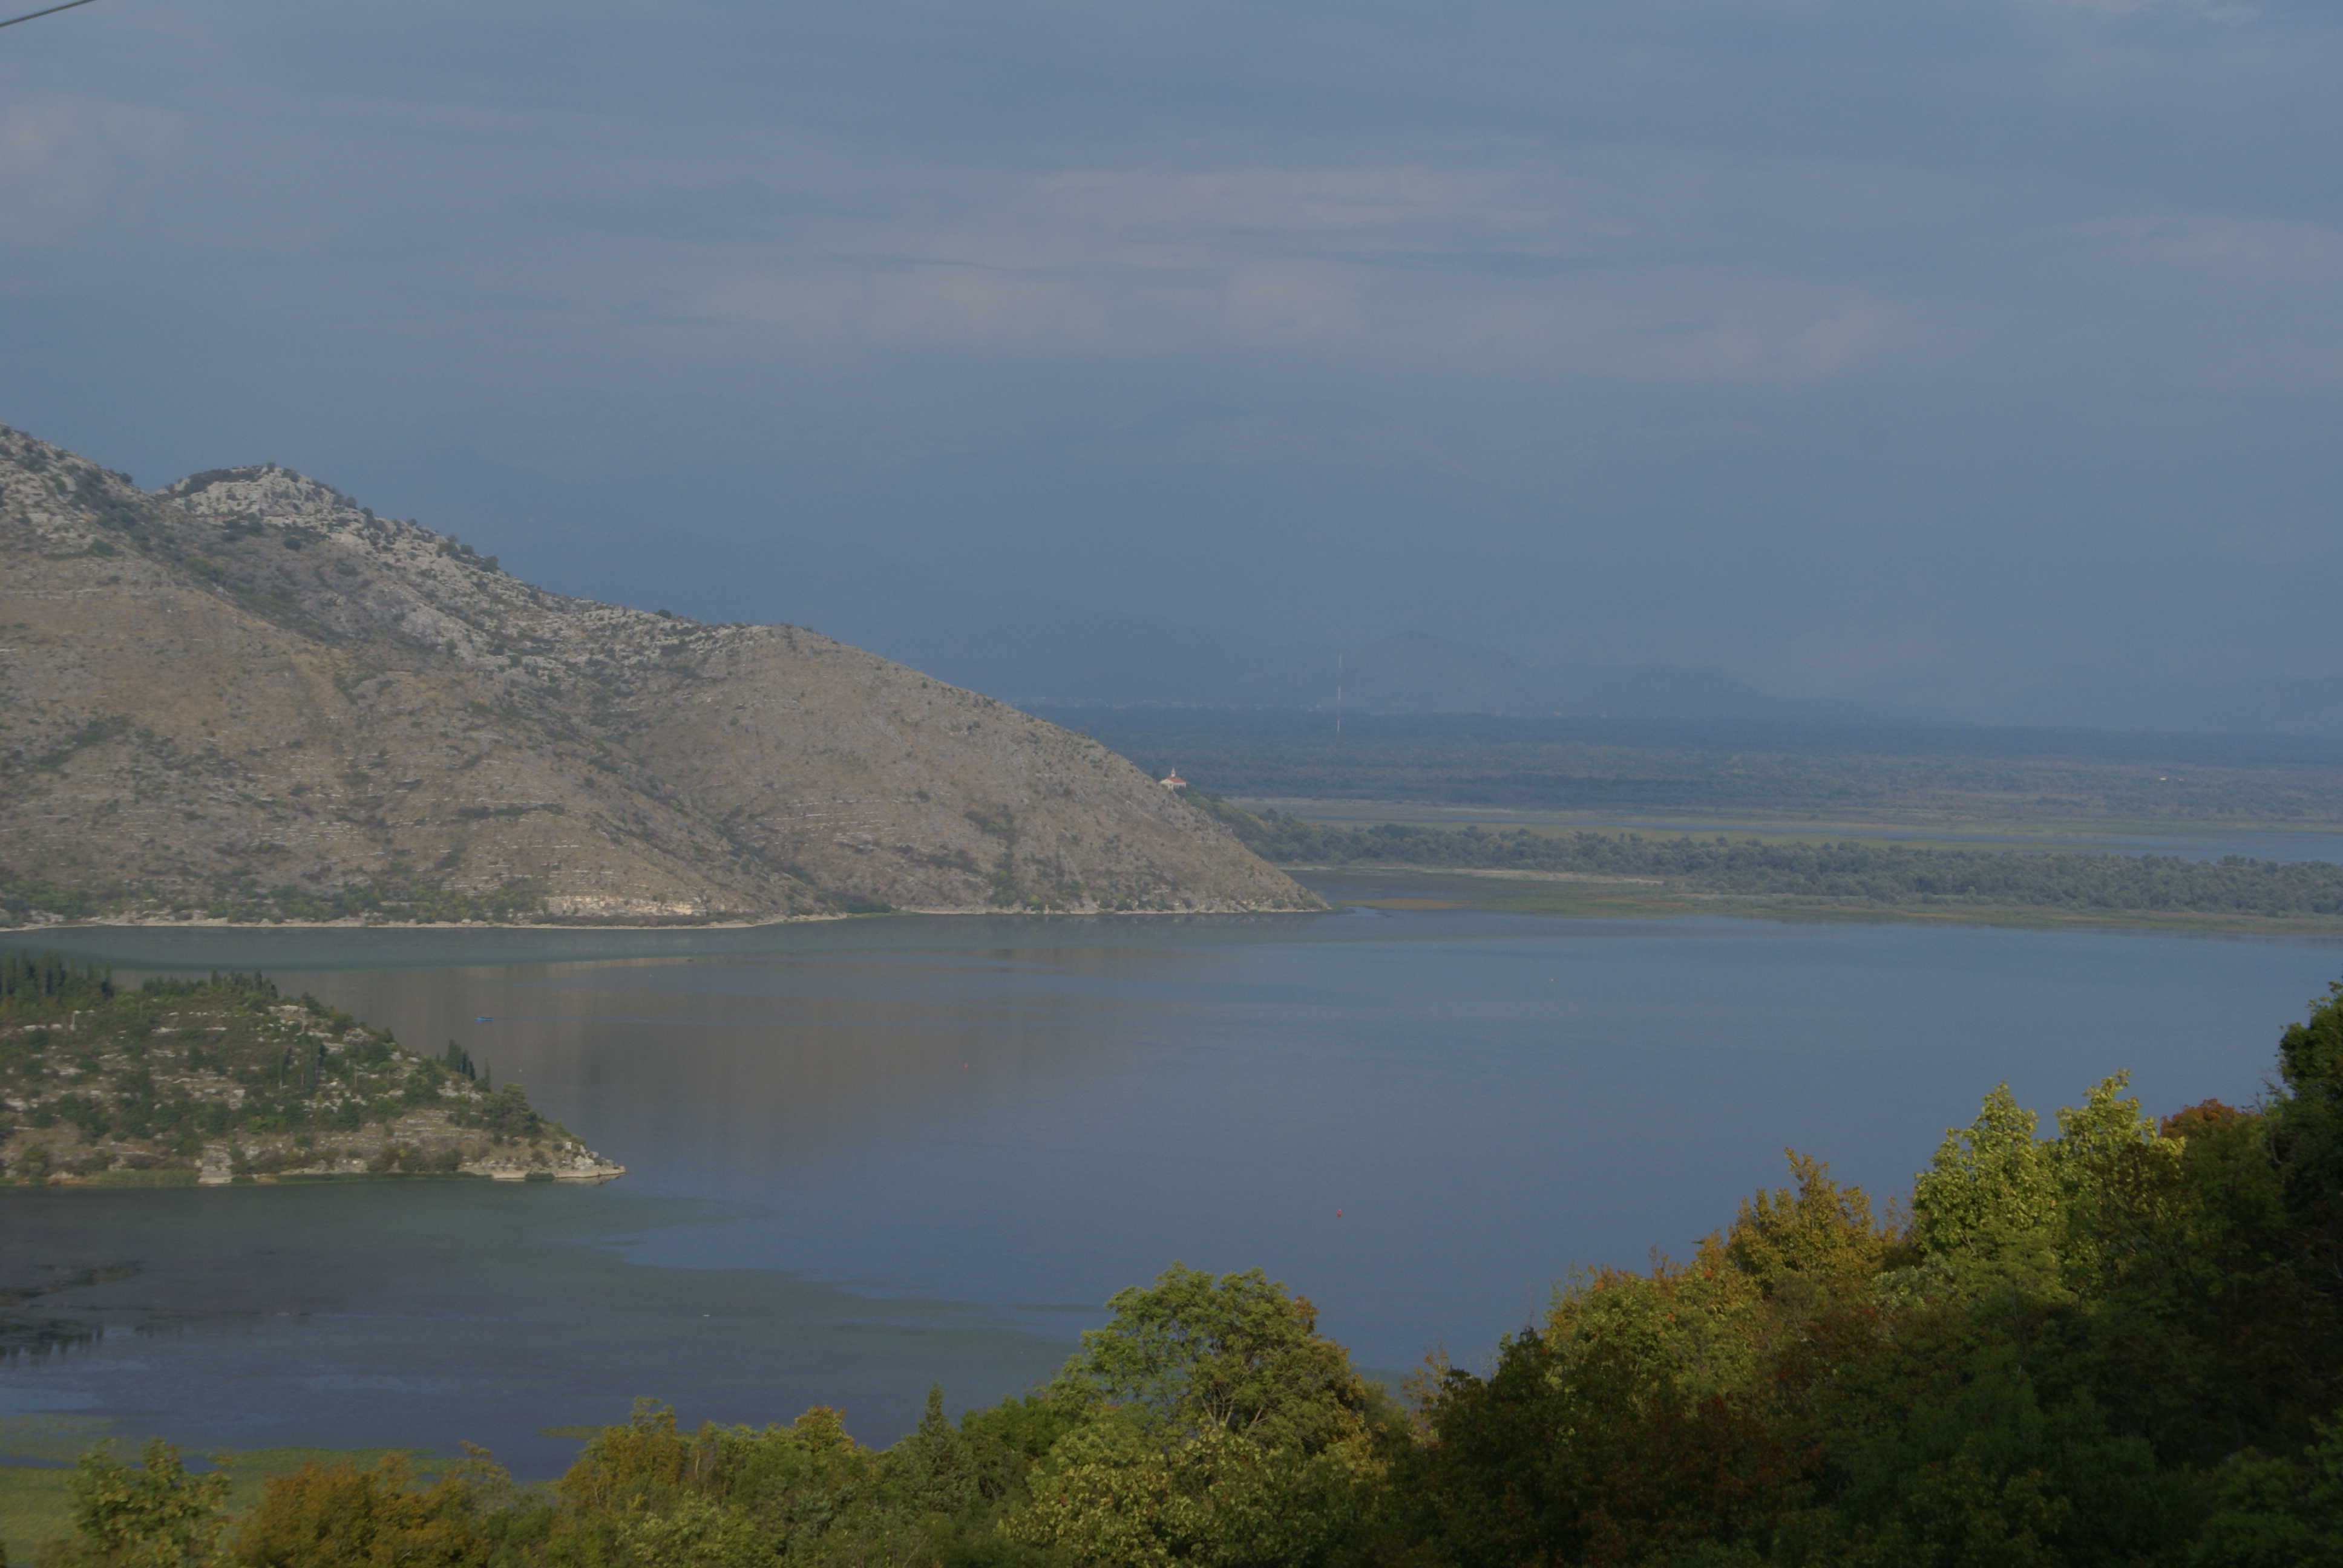 The monastery of Sveti Nikola Vranjina (in the centre of the picture) on Lake Skadar, Republic of Montenegro